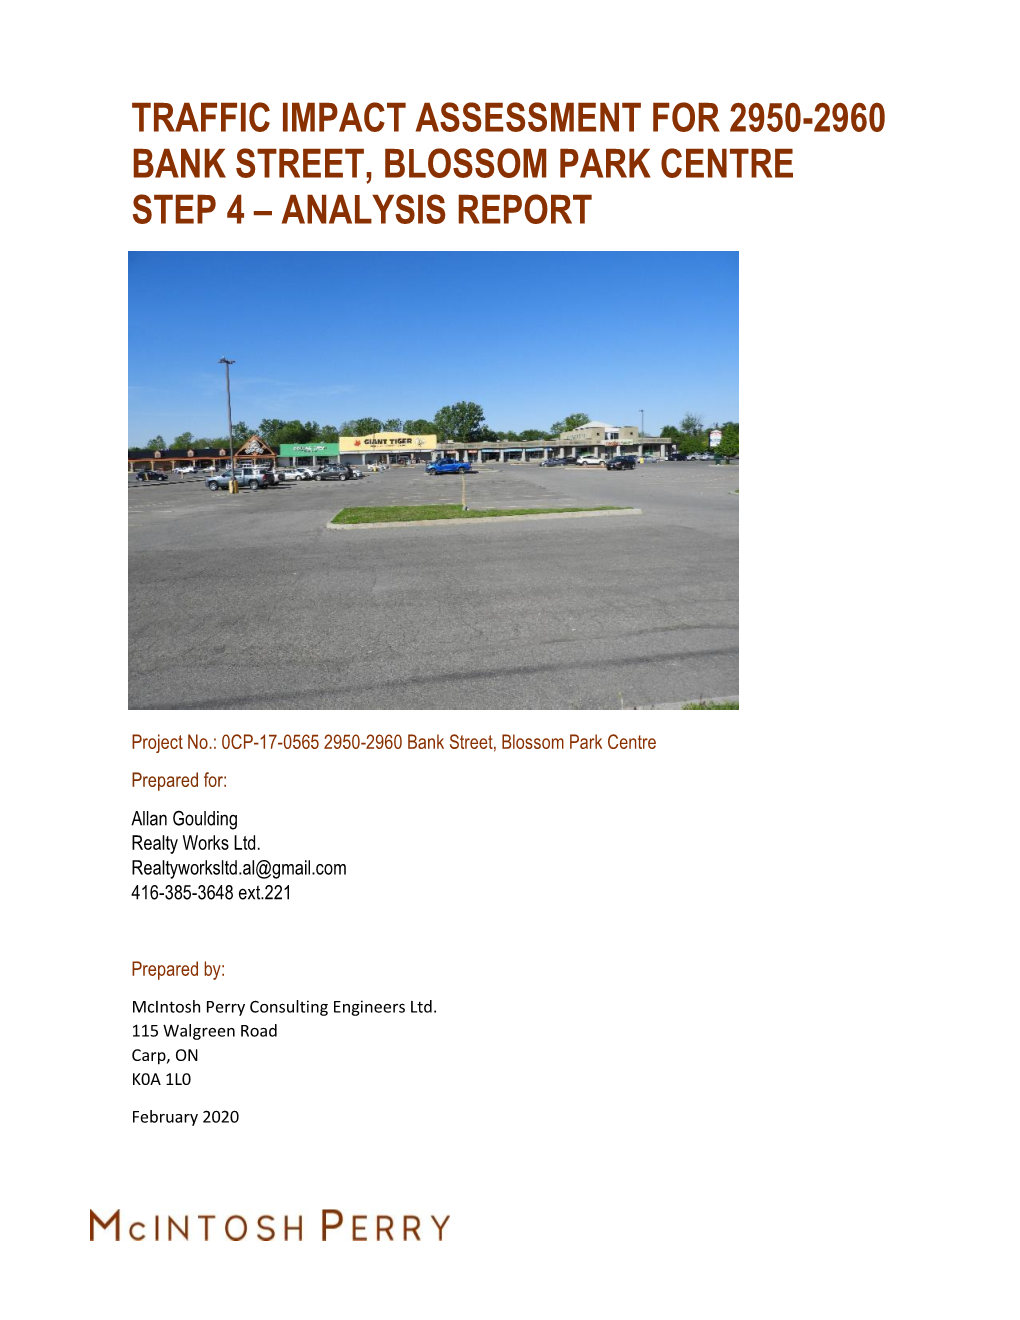 Traffic Impact Assessment for 2950-2960 Bank Street, Blossom Park Centre